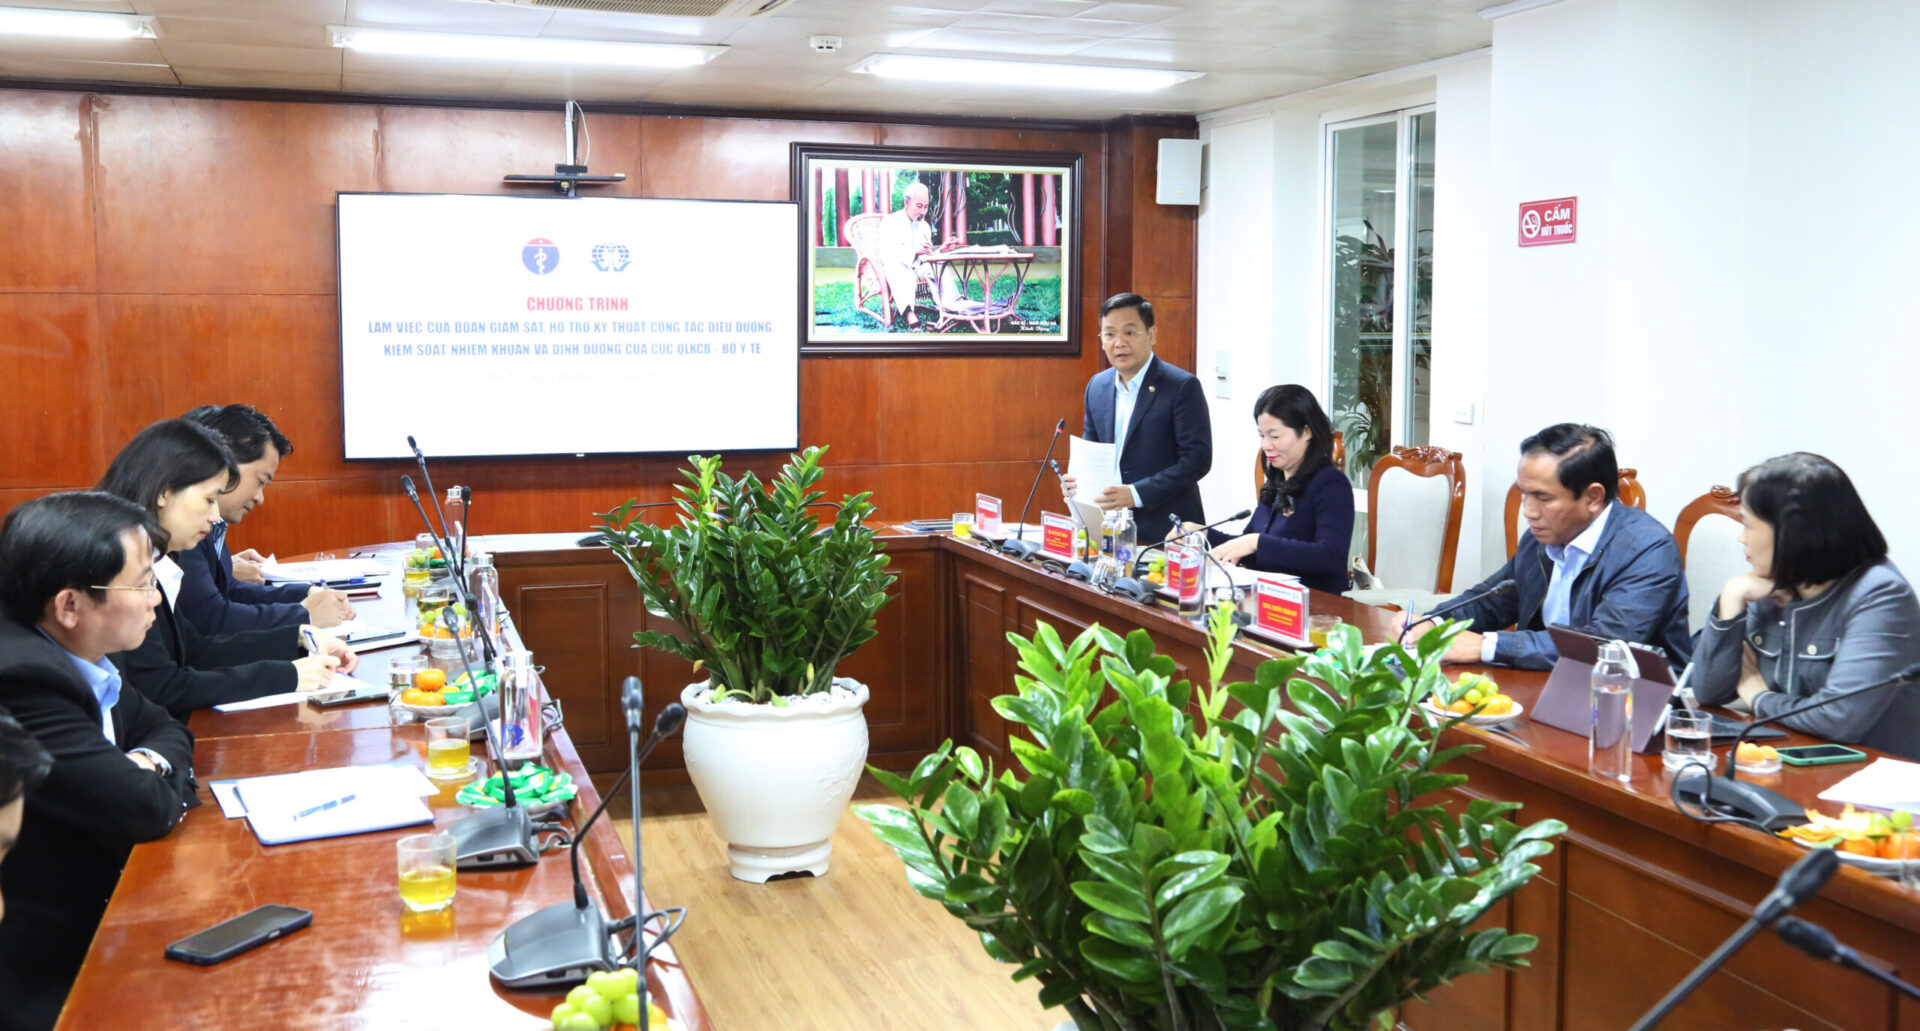 TS Vương Ánh Dương - Phó Cục trưởng Cục QLKCB phát biểu tại chương trình